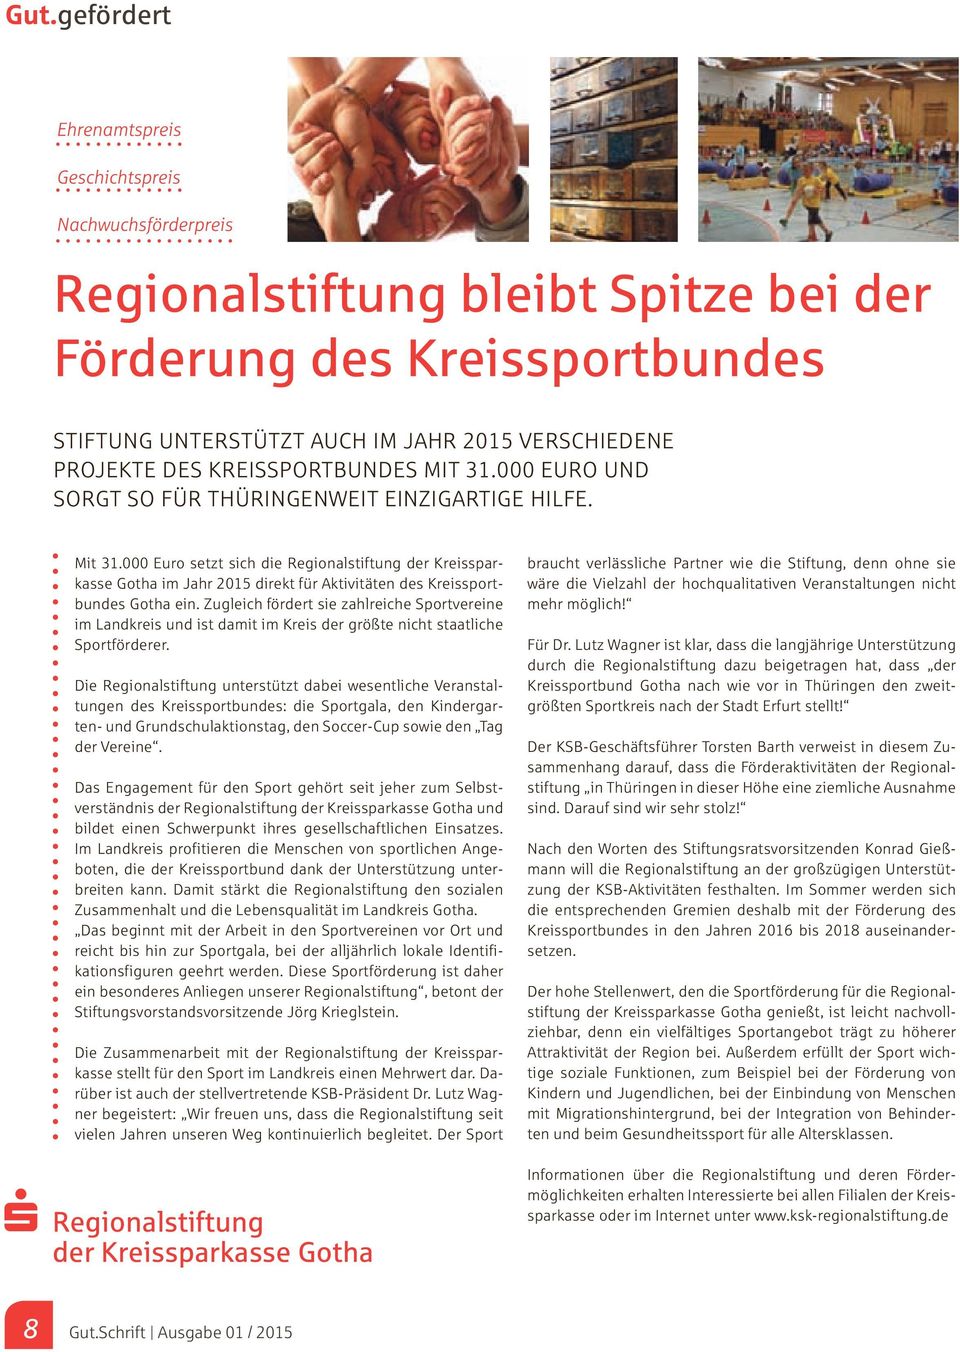 000 Euro setzt sich die Regionalstiftung der Kreissparkasse Gotha im Jahr 2015 direkt für Aktivitäten des Kreissportbundes Gotha ein.